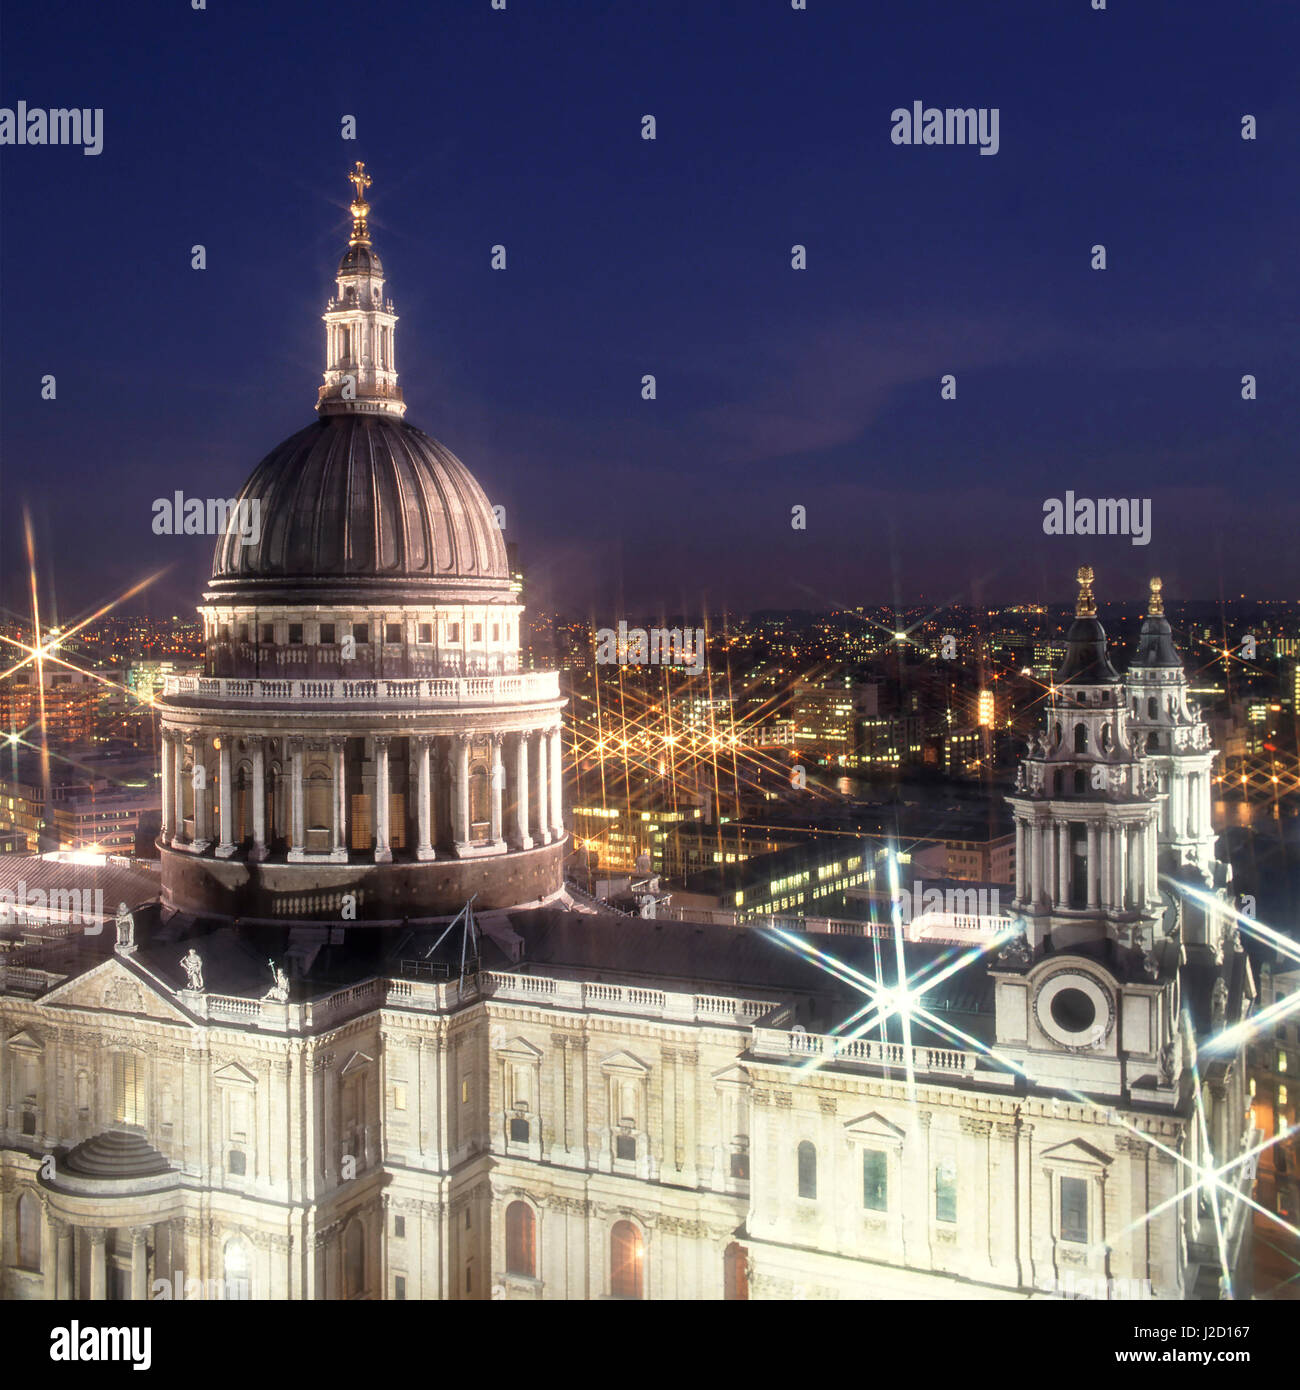 Cathédrale historique emblématique de St Pauls Église d'Angleterre religion Christopher Wren Dome à la tombée de la nuit vue aérienne de dessus en regardant vers le bas Sur City of London, Royaume-Uni Banque D'Images